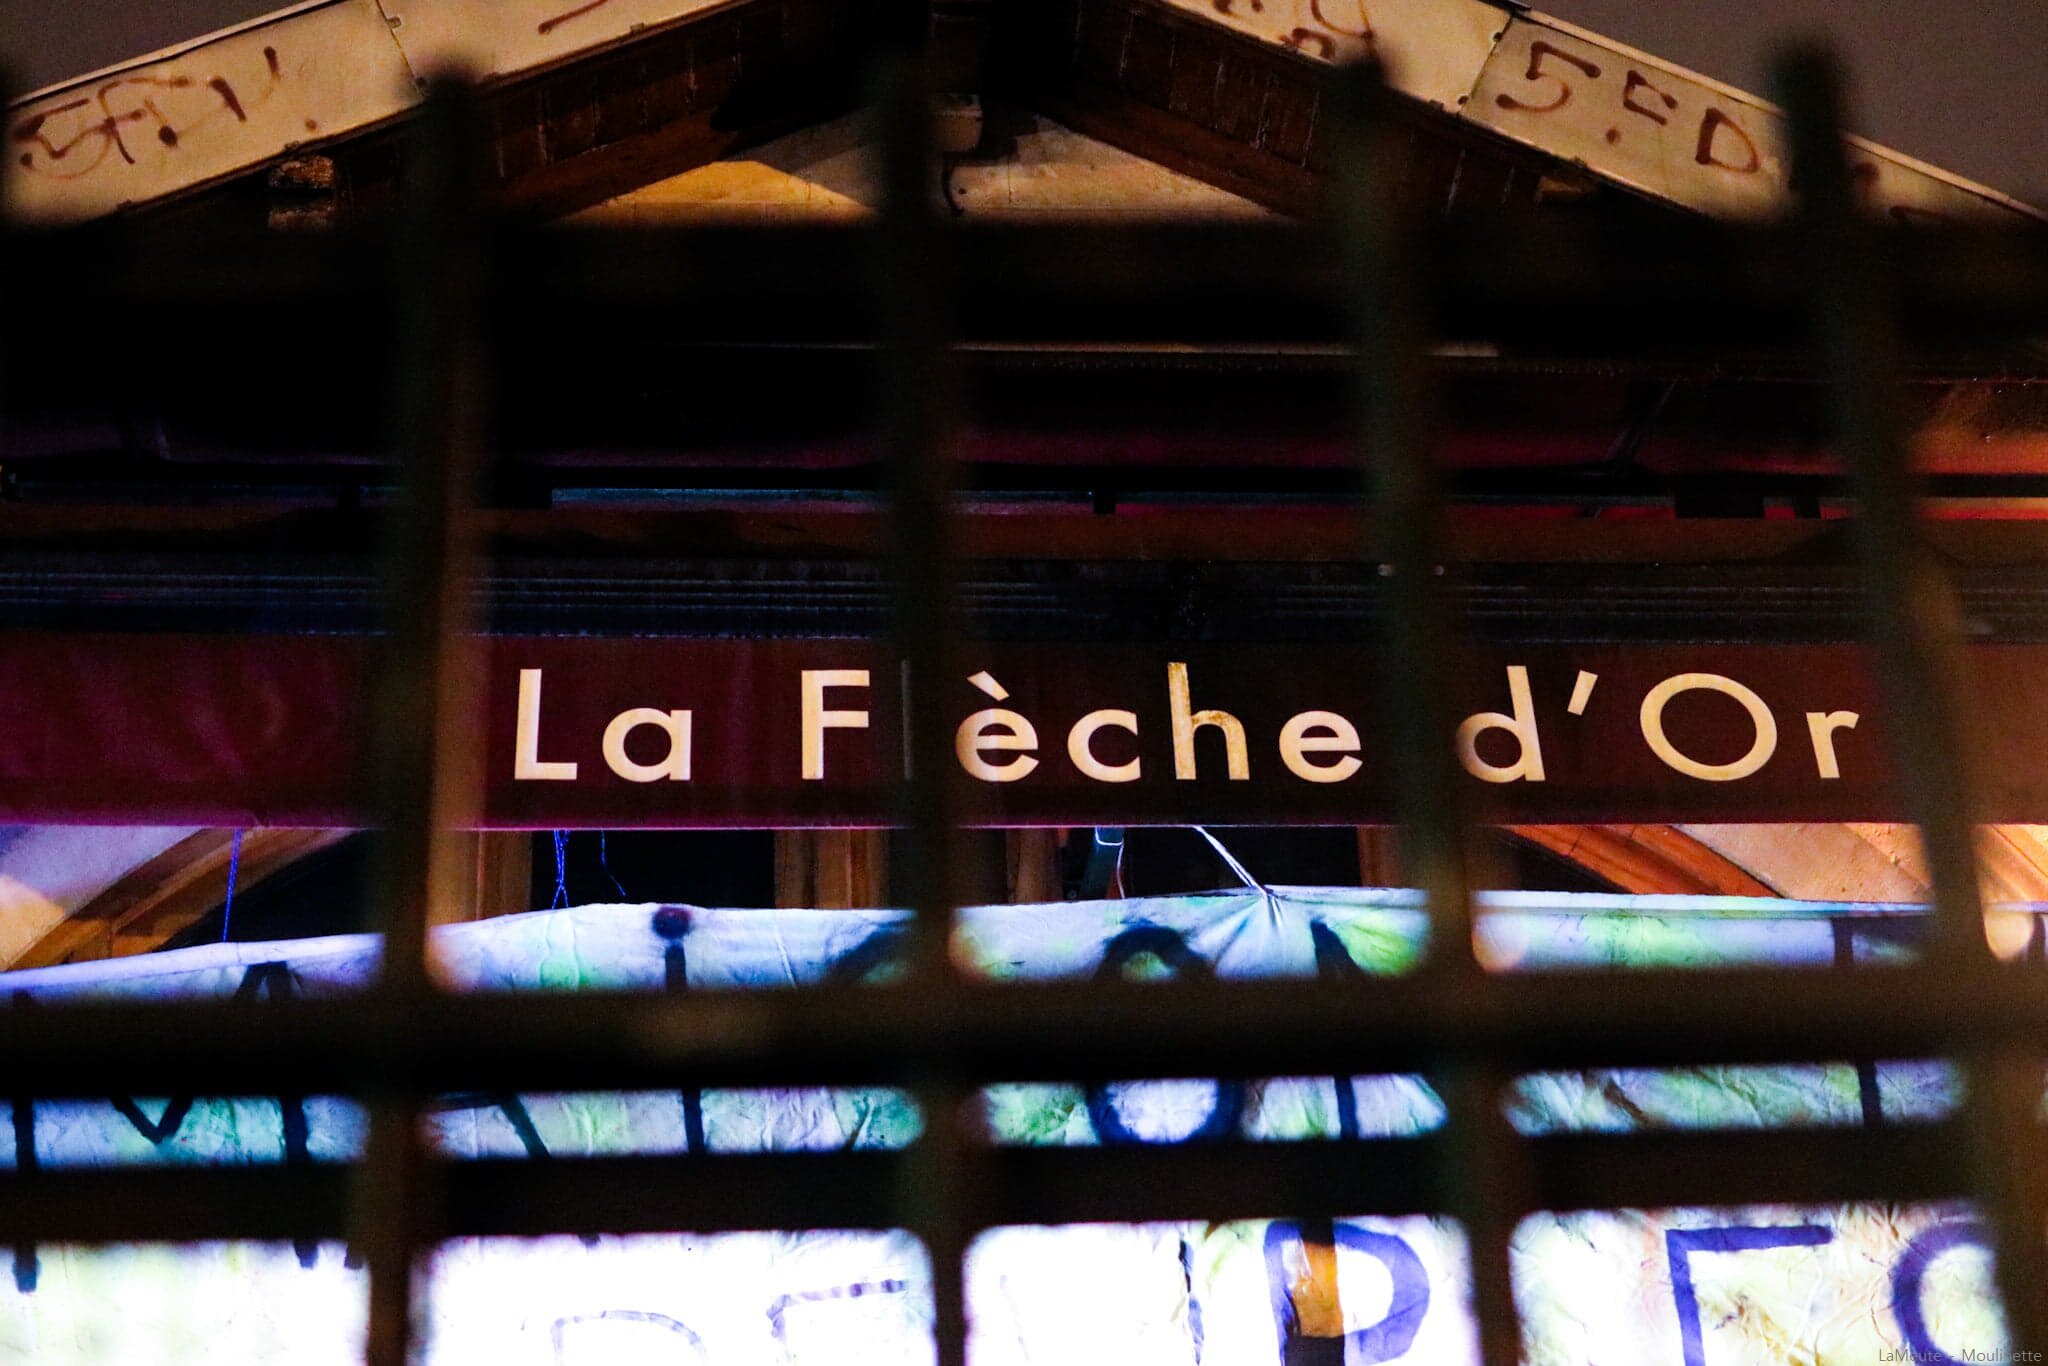  La façade de La Flèche d'or , au 102b rue de Bagnolet à Paris. L'emplacement de la Maison des Peuples est hautement stratégique pour les occupants qui dénoncent la gentrification de ce quartier encore populaire, chassant toujours plus violemment les